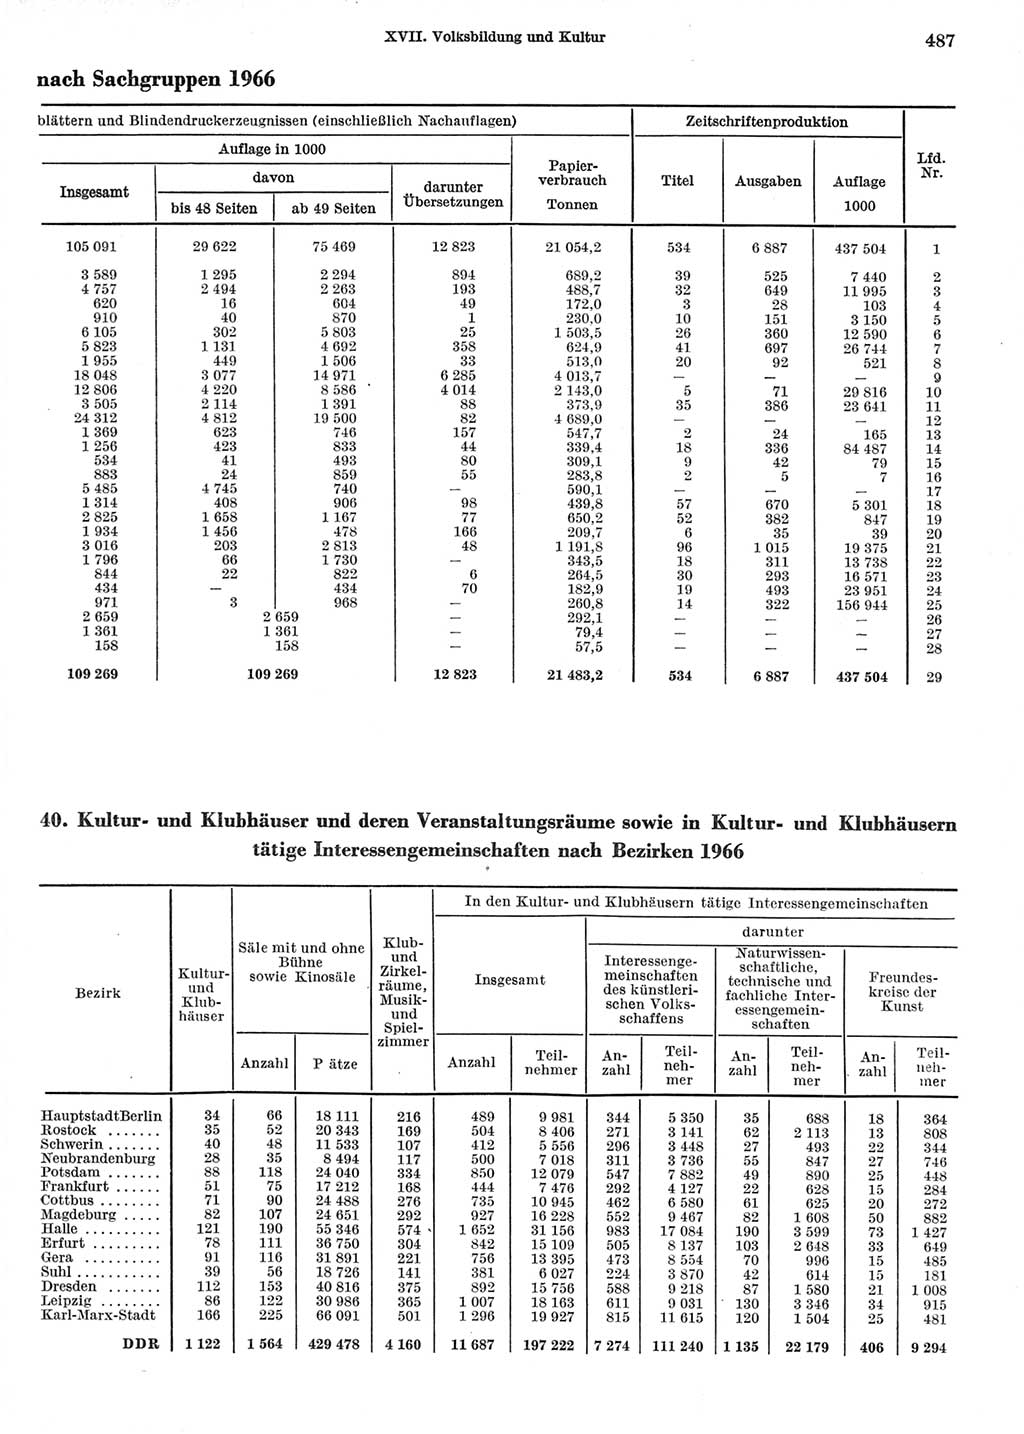 Statistisches Jahrbuch der Deutschen Demokratischen Republik (DDR) 1967, Seite 487 (Stat. Jb. DDR 1967, S. 487)